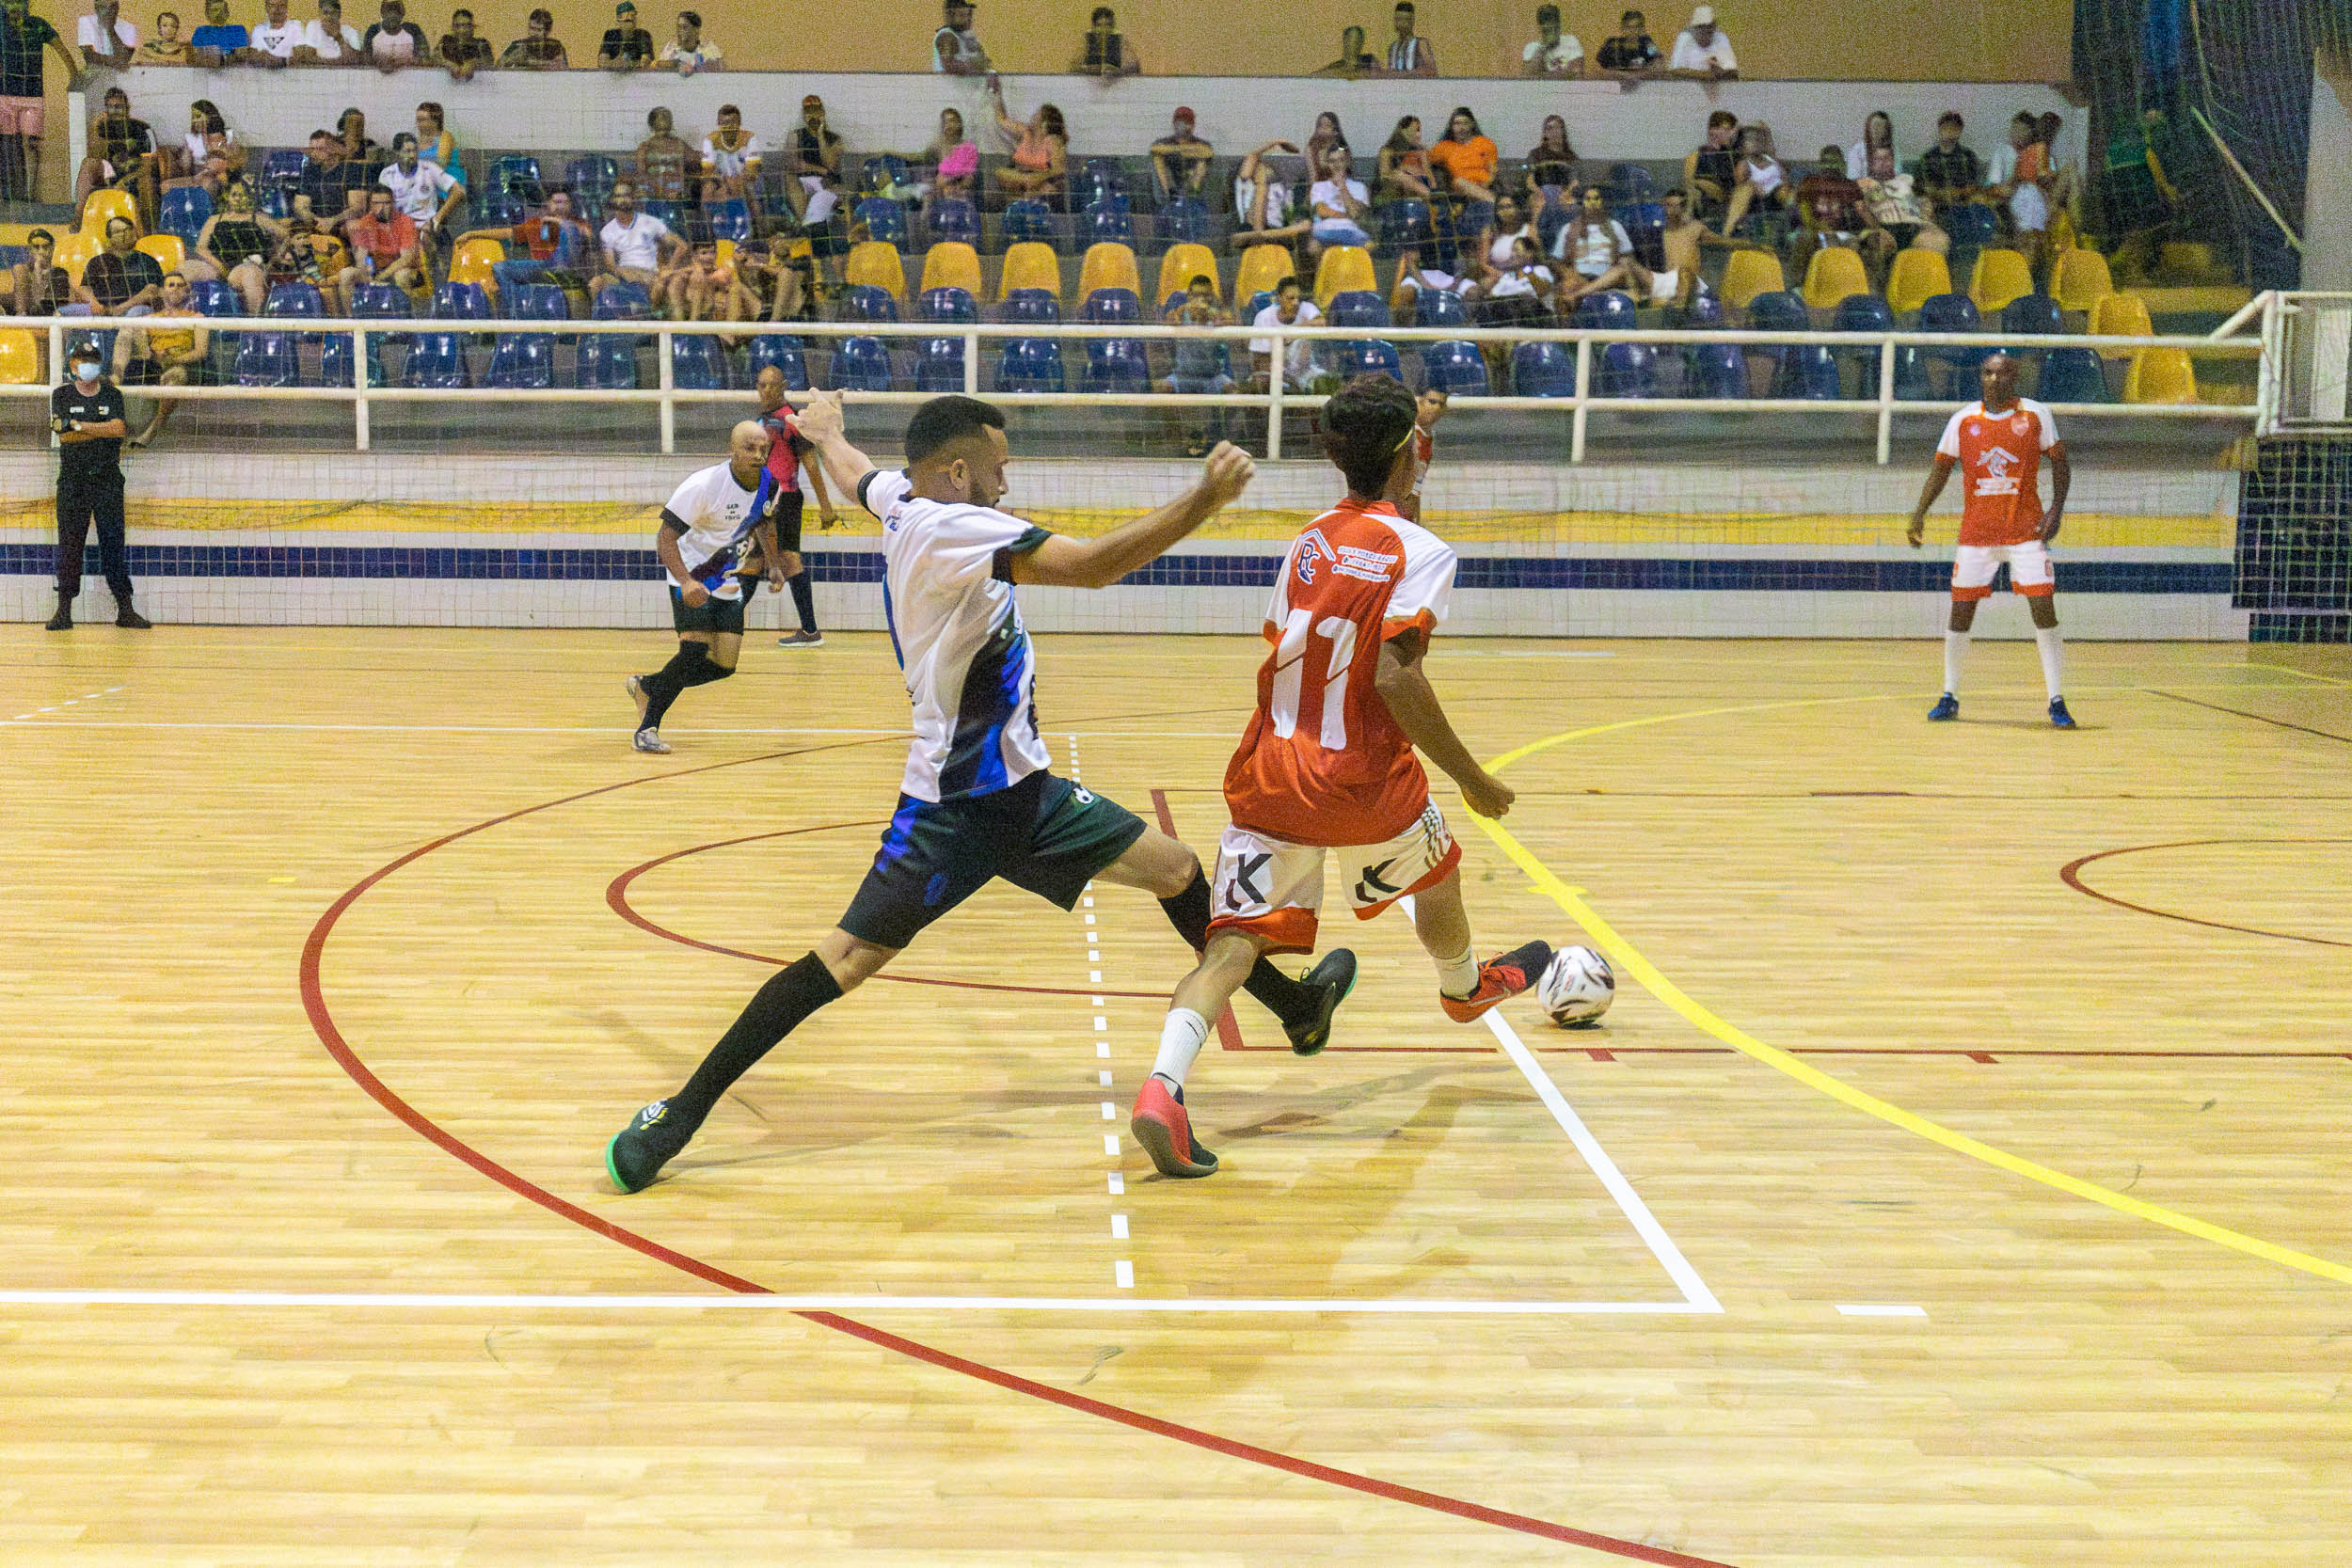 Primeiro Jogo do Campeonato Municipal de Futsal de Urupês - na Quadra Coberta - Times em Quadra: Inter e Arsenal - Foto: Henrique Alonso Camilo